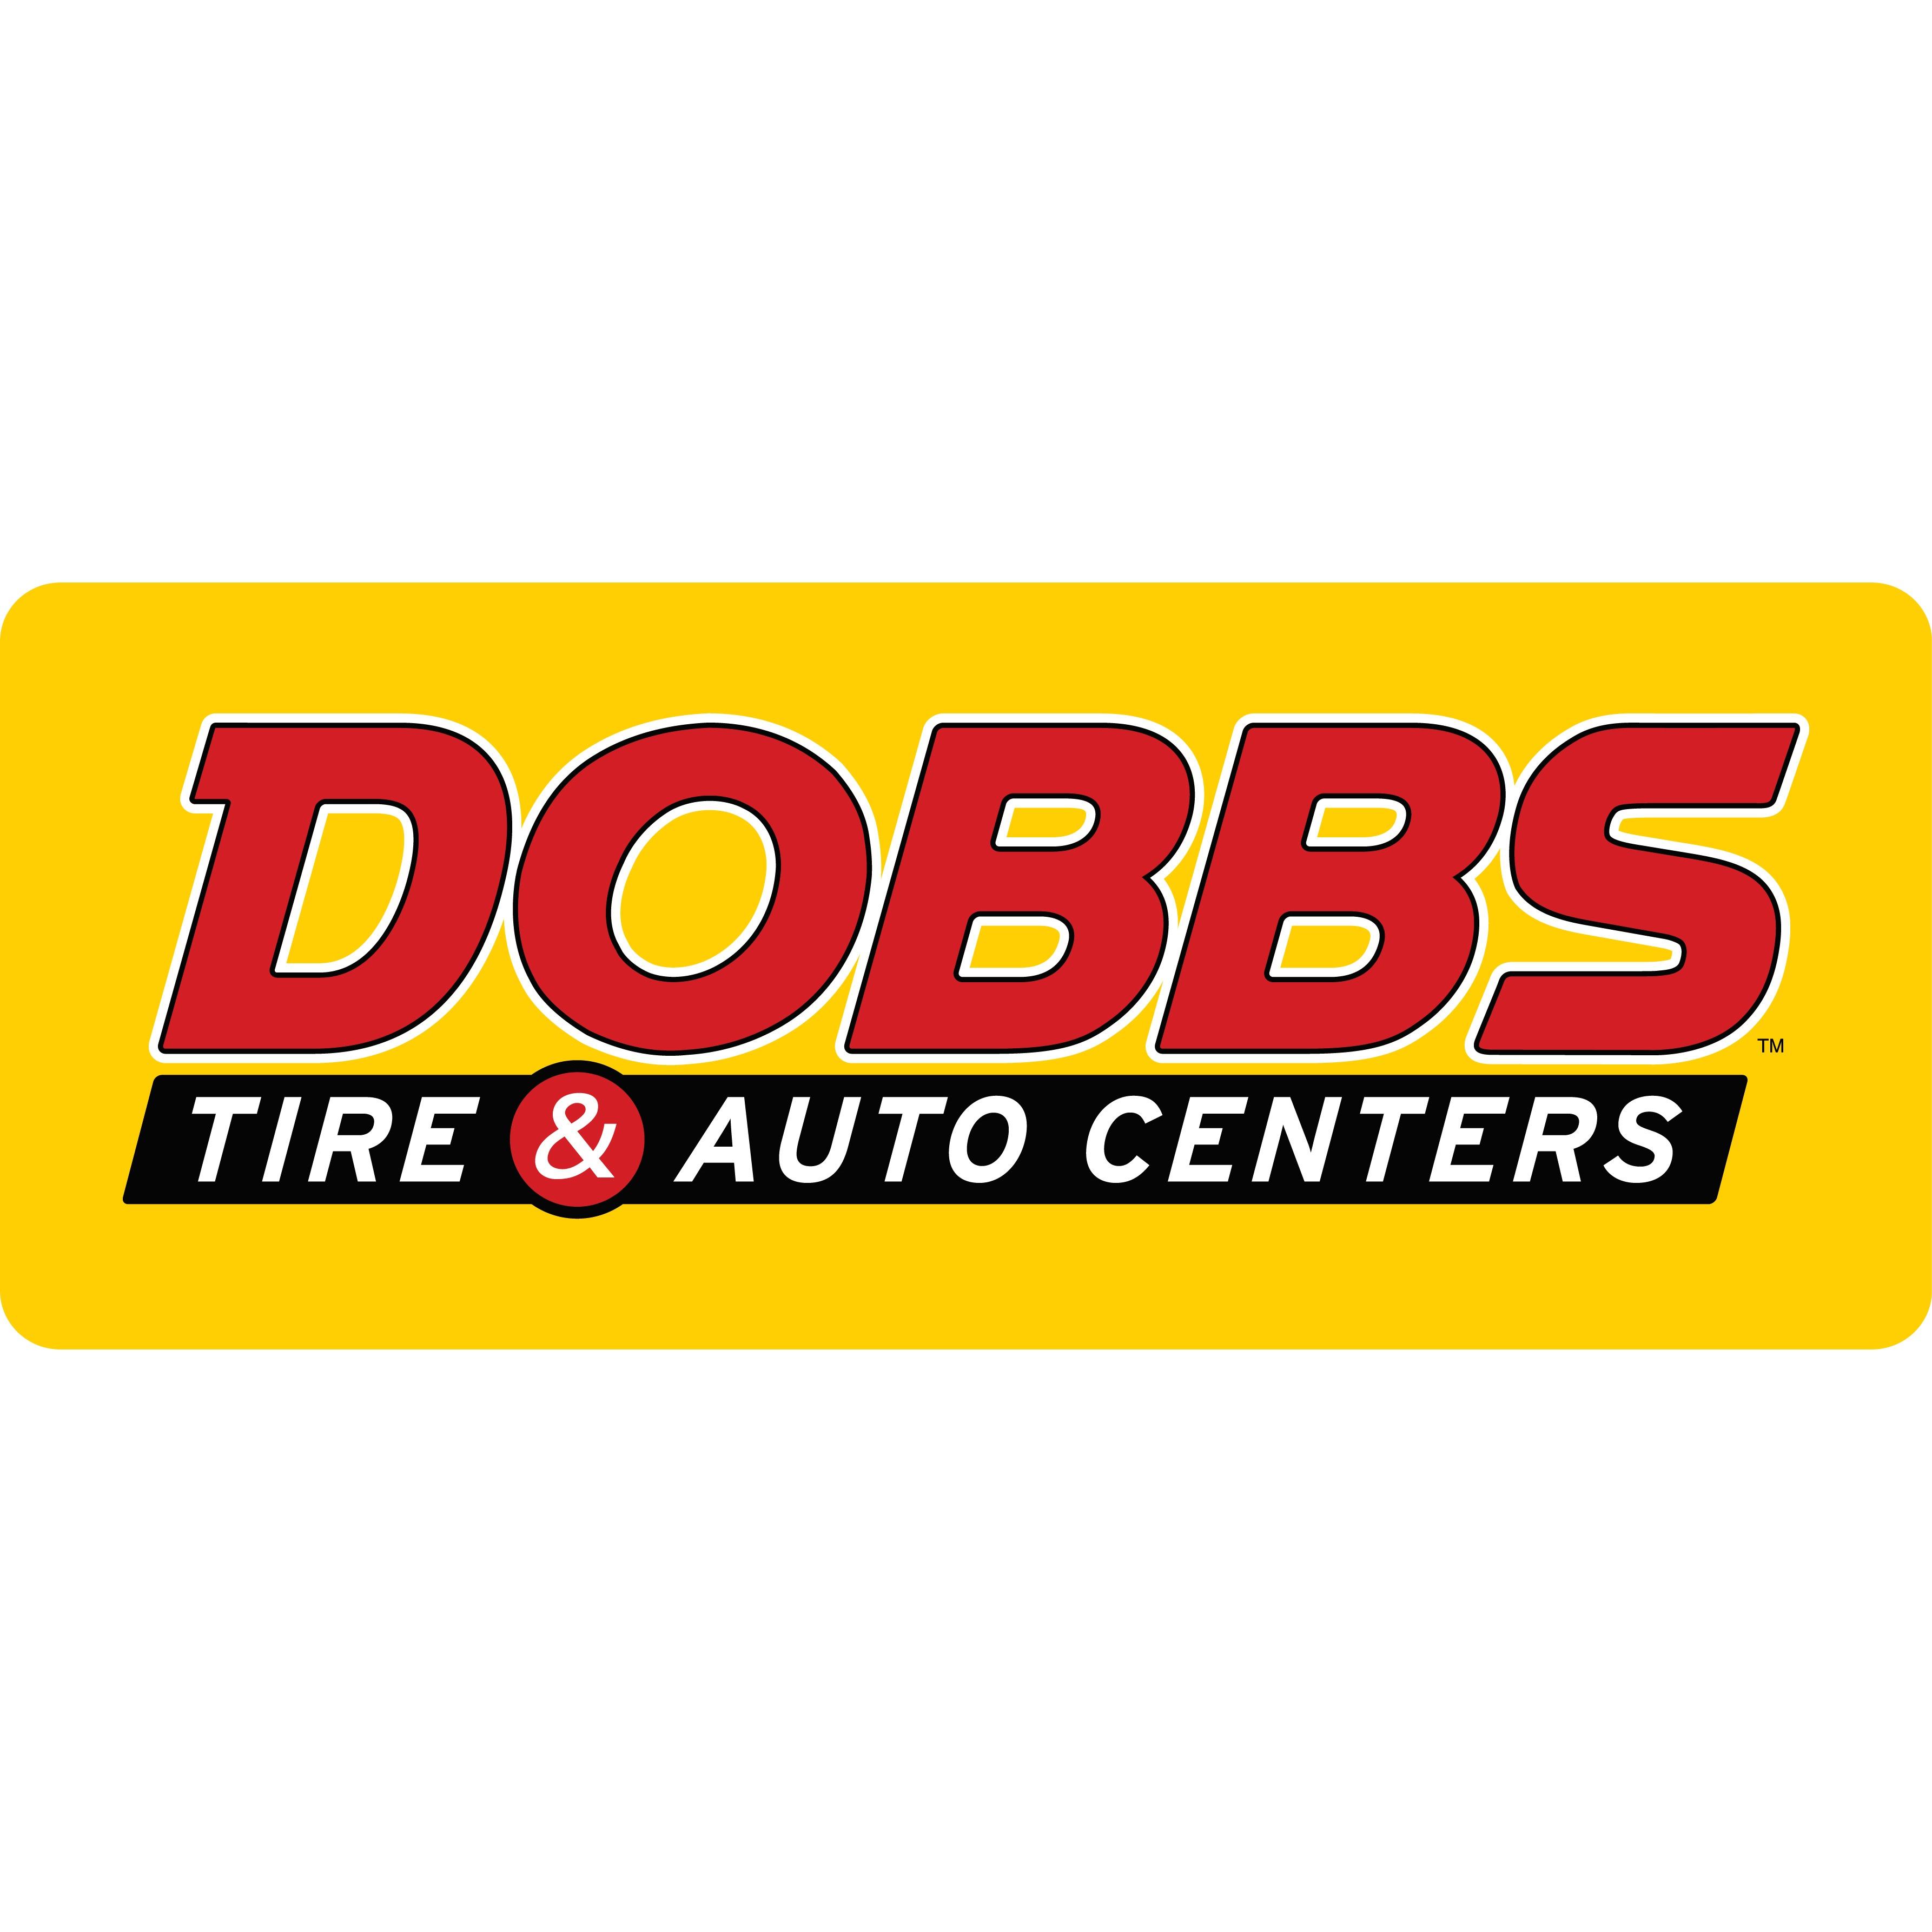 Dobbs Tire & Auto Centers - Creve Coeur, MO - Company Profile